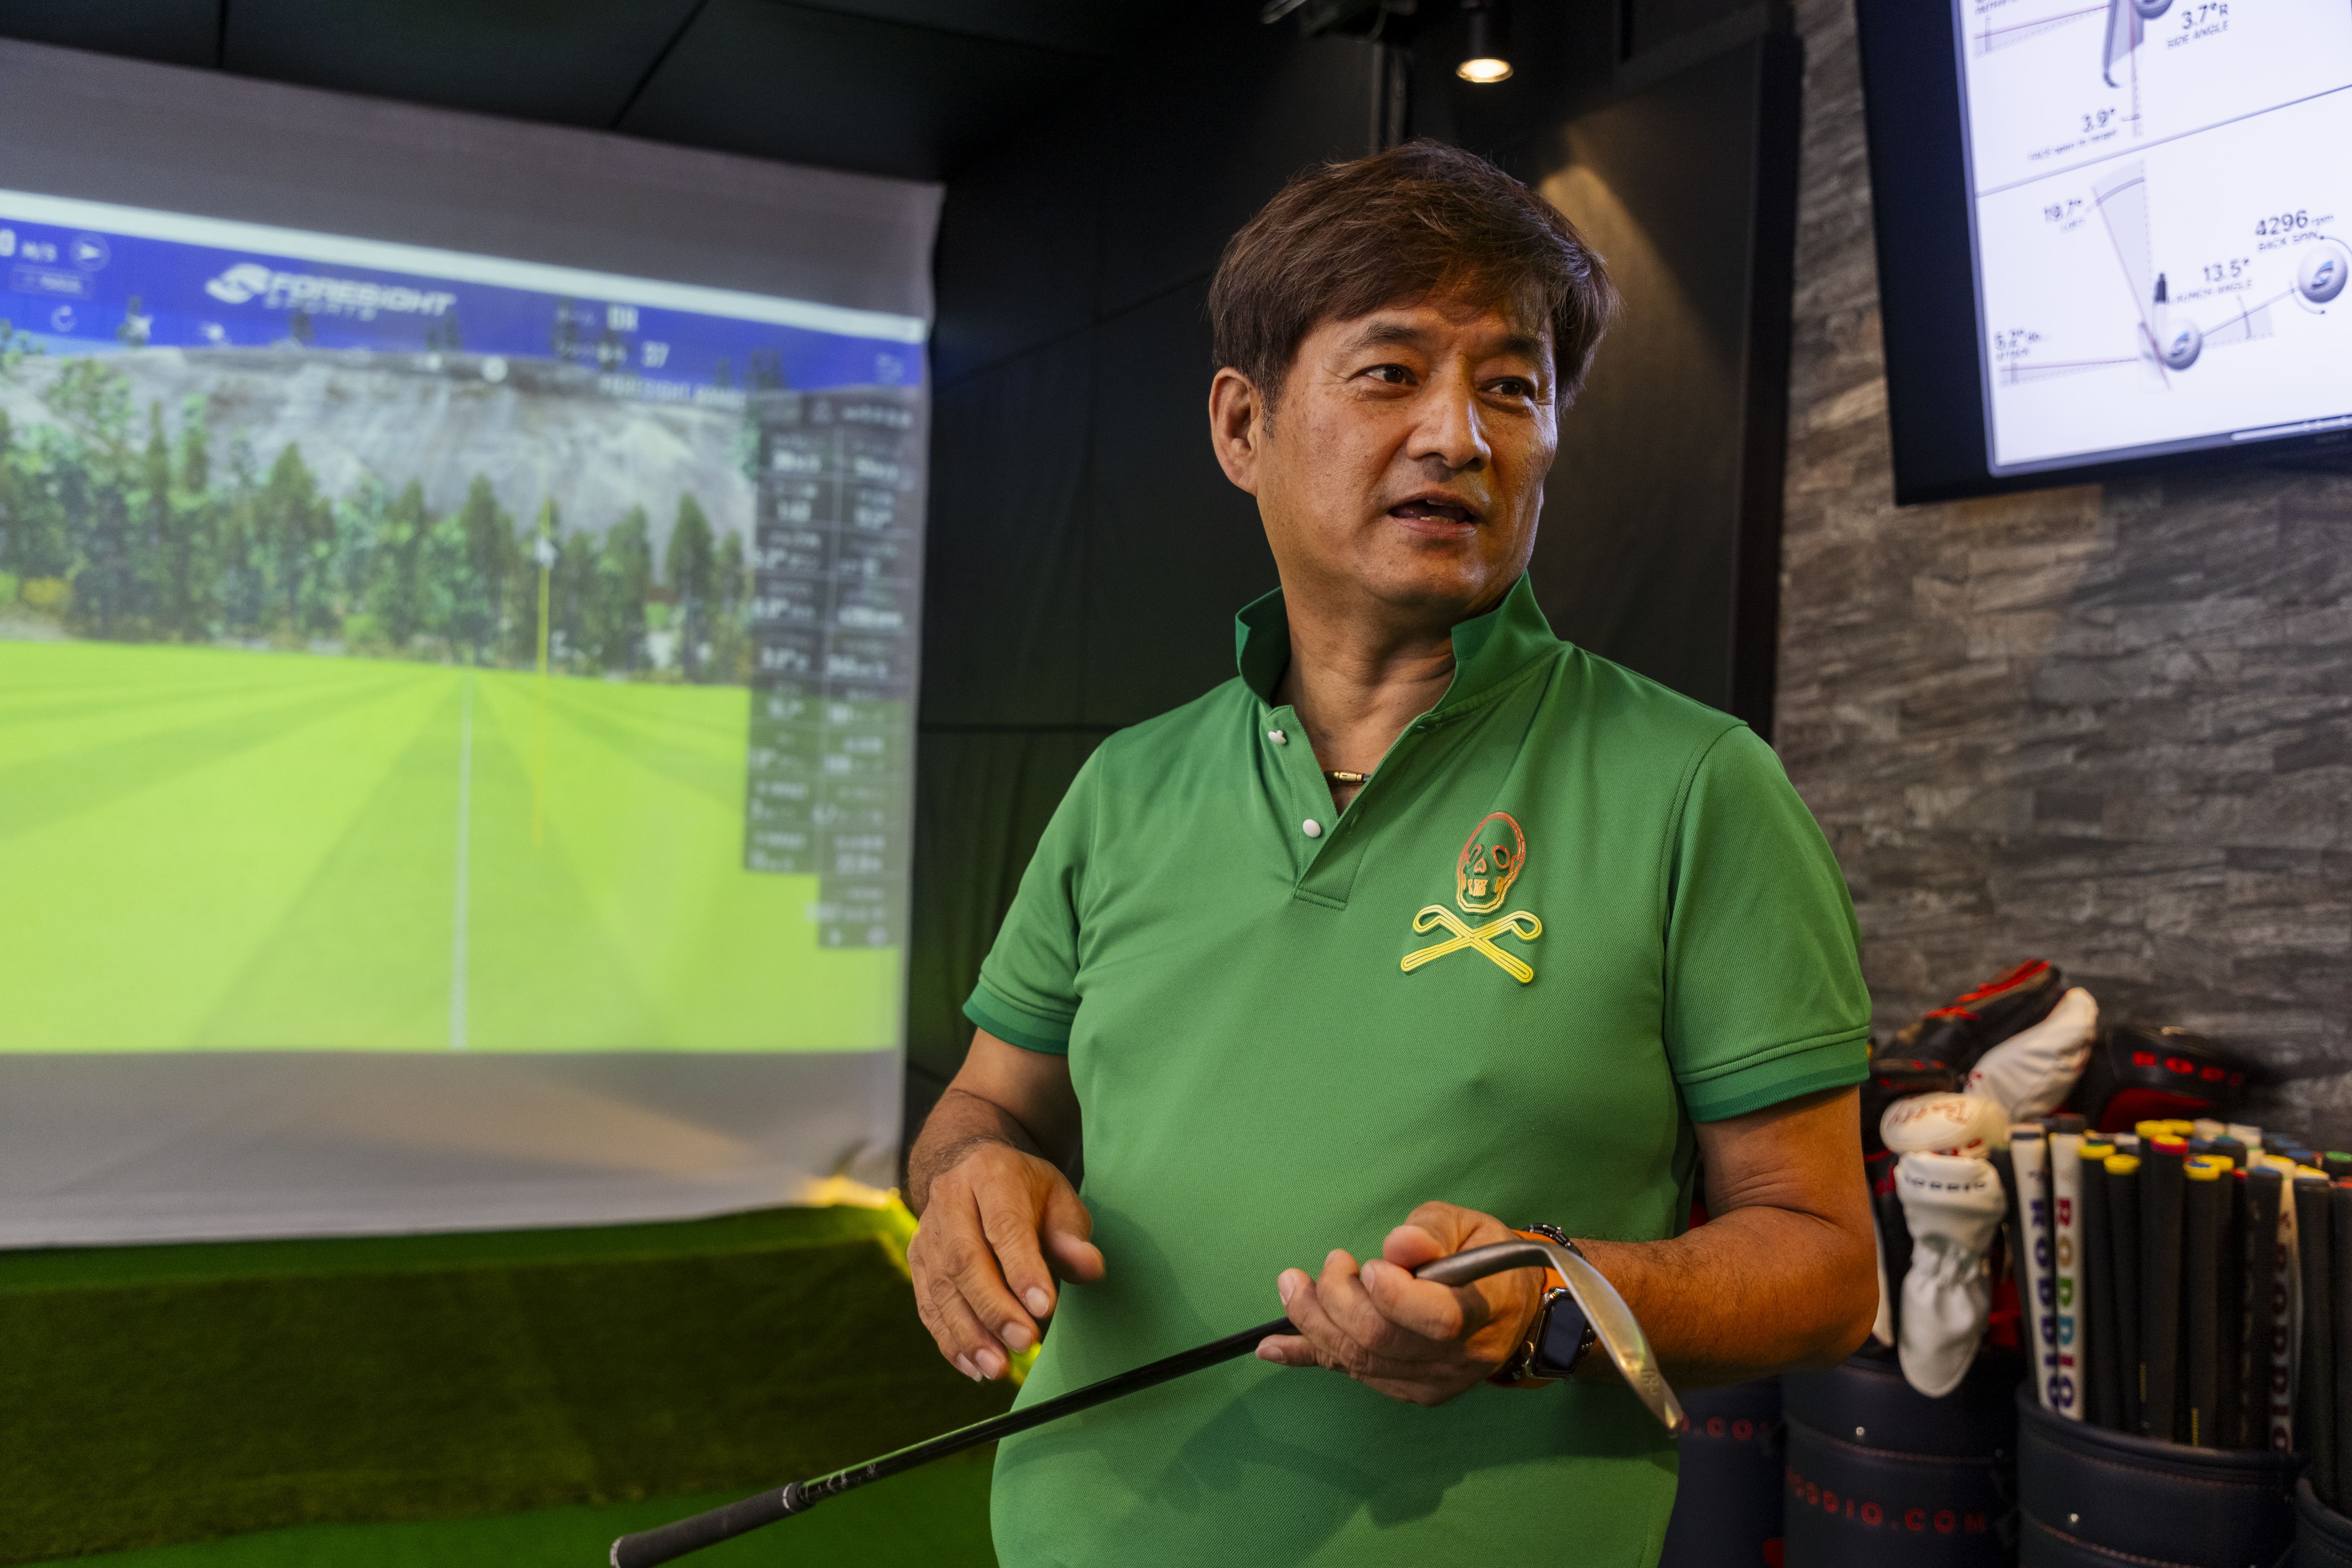 ゴルフ工房K・北村朋弘社長。フィッティングに特化したショップを目指し、2022年夏より豊中市でスタートした現店舗では、フィッティングルームの充実にこだわった。